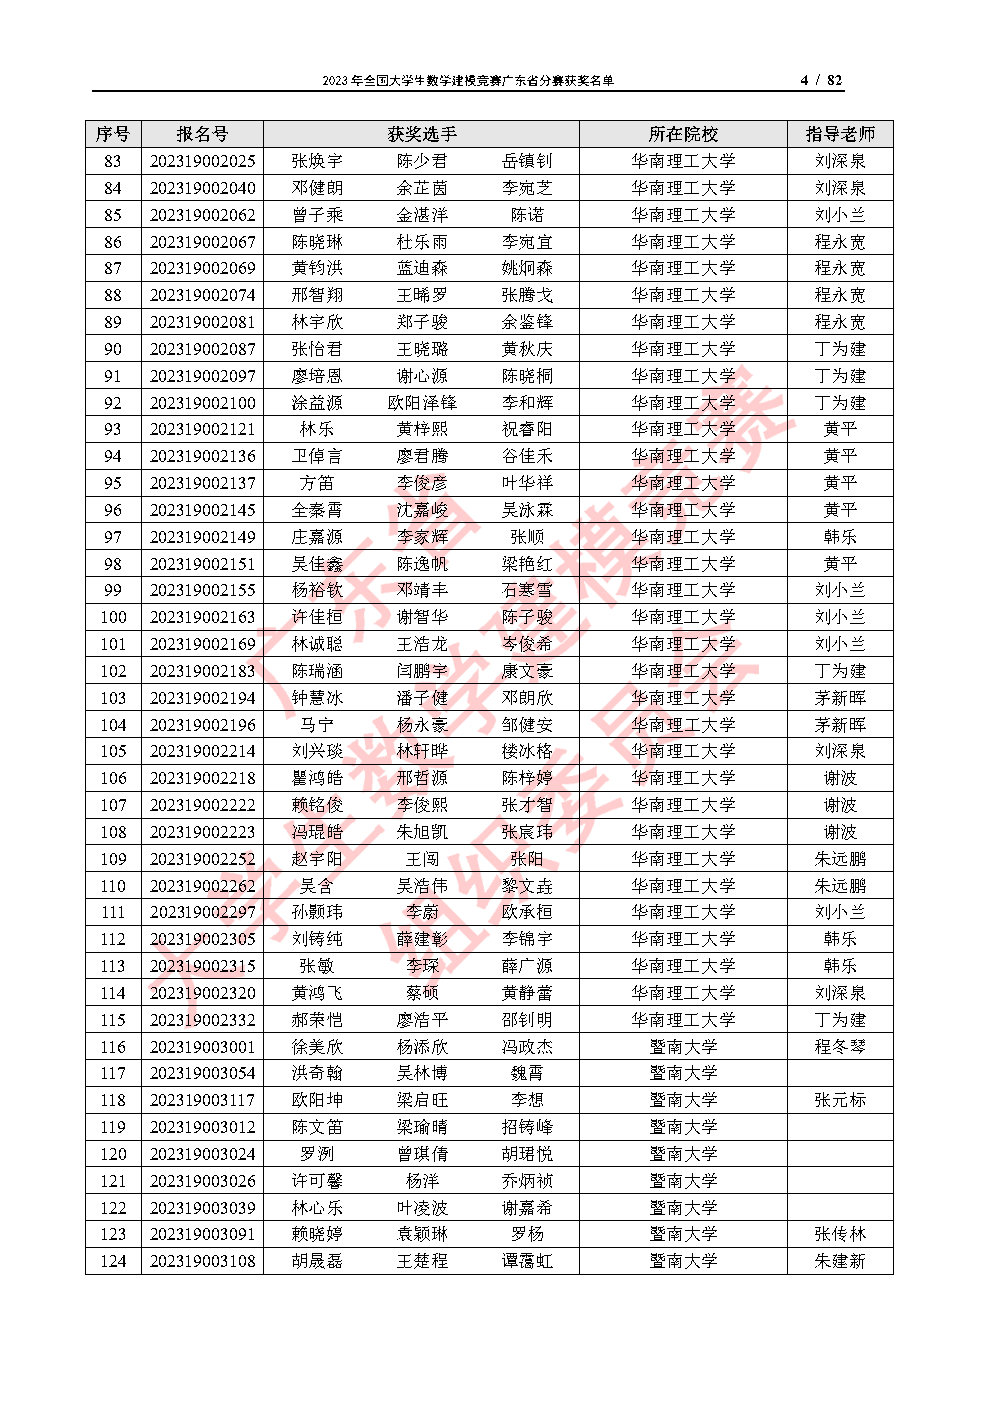 2023年全国大学生数学建模竞赛广东省分赛获奖名单_Page4.jpg